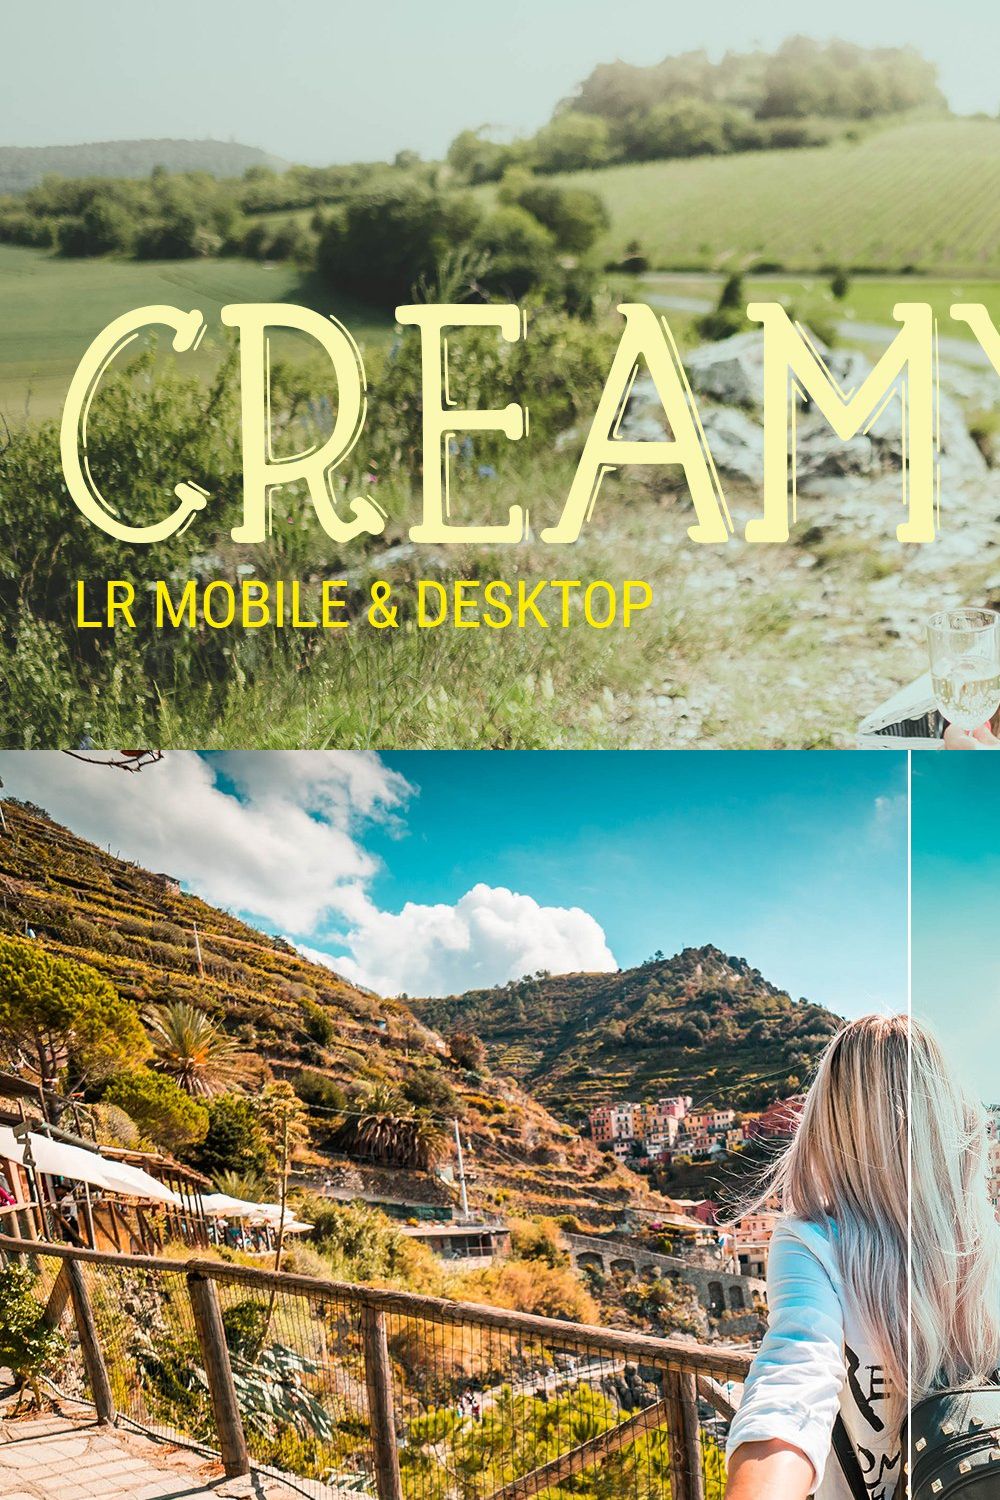 Creamy LR Mobile, Desktop & ACR pinterest preview image.